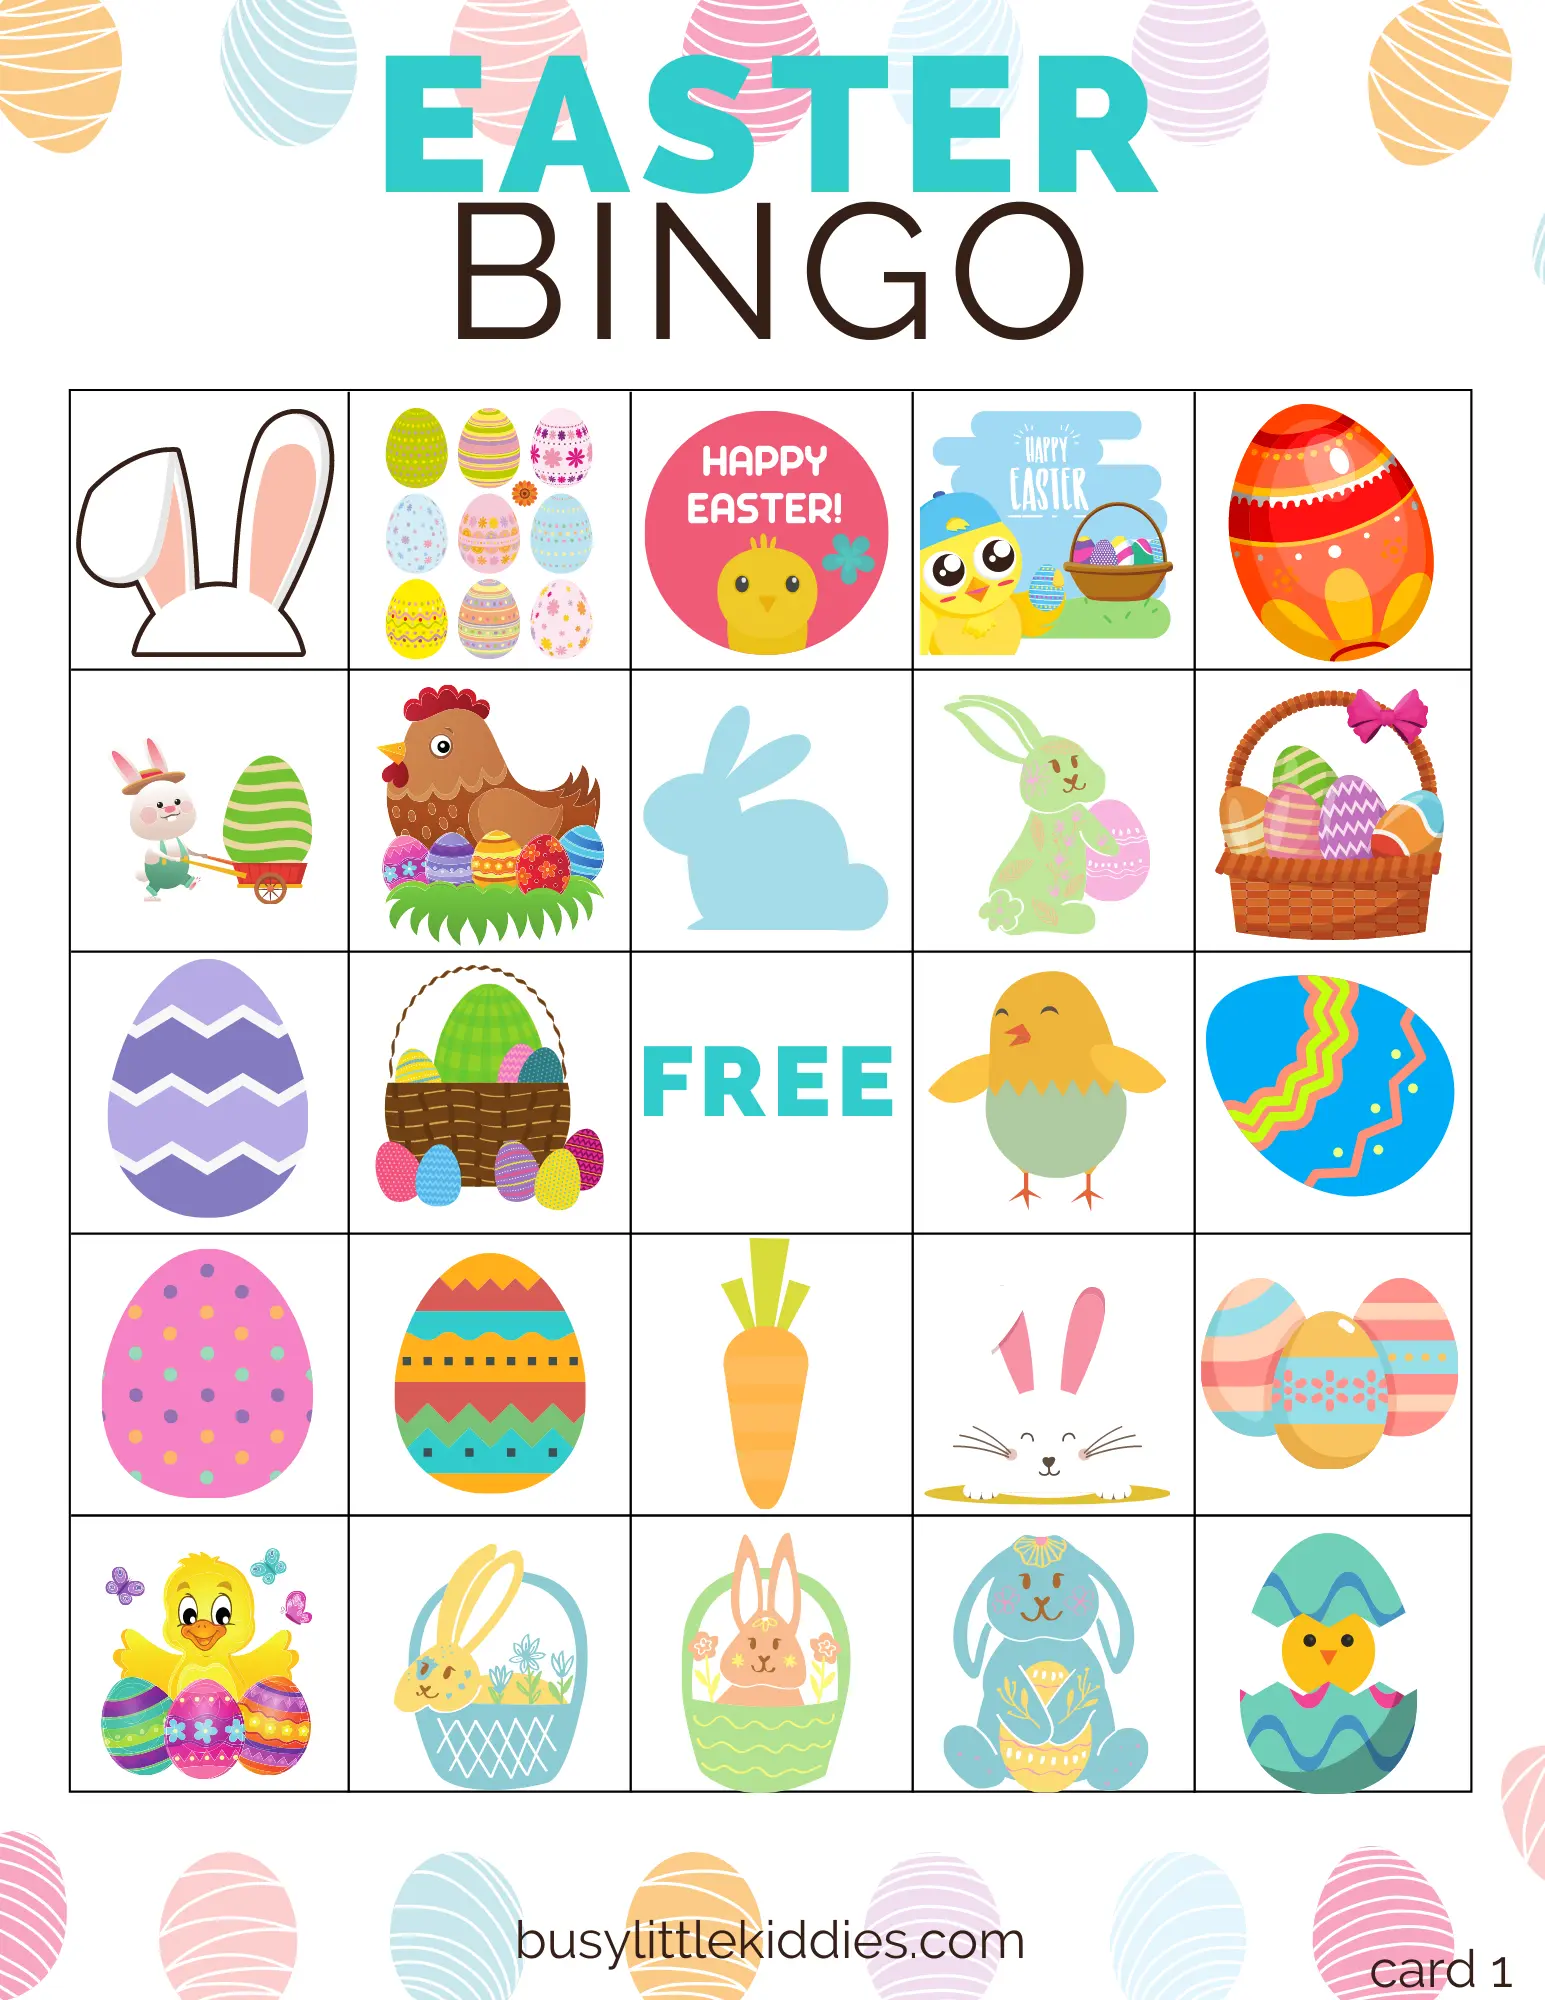 Easter bingo free printable 5 players